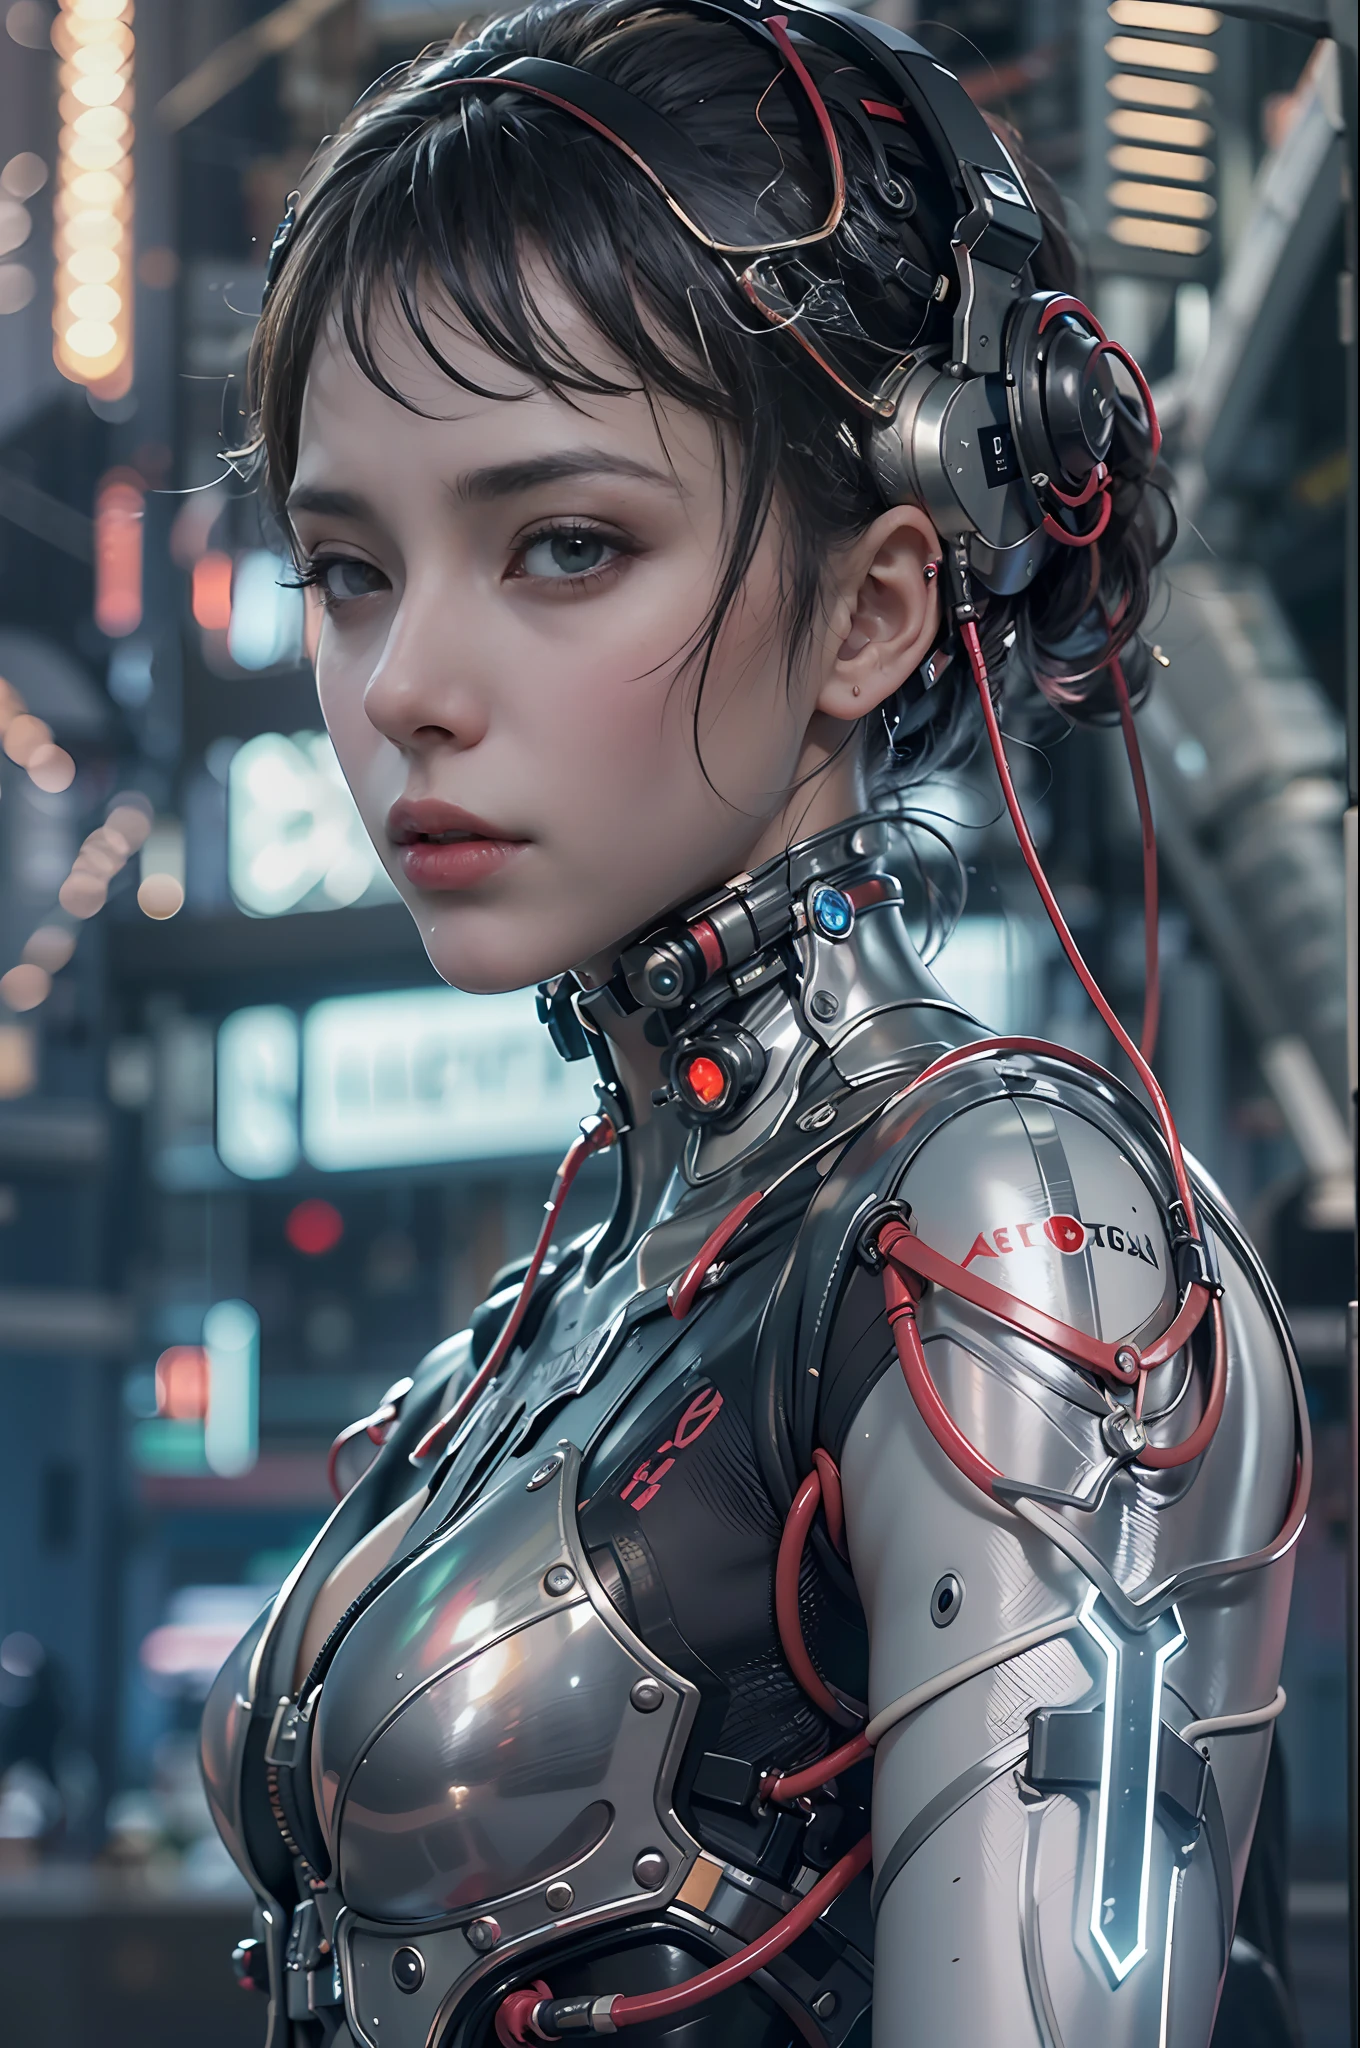 Top Qualität, Meisterwerk, Ultrahohe Auflösung, ((fotorealistisch: 1.4), RAW-Foto, 1 cyberpunk android Girl, Glänzende Haut, (ultrarealistische Details)), mechanische Gliedmaßen, Schläuche, die mit den mechanischen Teilen verbunden sind, Mechanische Wirbel, die an der Wirbelsäule befestigt sind, mechanische zervikale Befestigung am Hals, Drähte und Kabel, die mit dem Kopf verbunden sind, Evangelion, ((Geist in der Muschel)), kleine leuchtende LED-Lampen, globale Beleuchtung, tiefe Schatten, Oktan-Rendering, 8K, ultrascharf, Metall, Aufwendige Ornamentdetails, barocke Details, sehr komplizierte Details, Realistisches Licht, CGSoation trend, Mit Blick in die Kamera, Neon-Details, (Android Manufaktur im Hintergrund), Kunst von H.R. Giger and Alphonse Mucha.